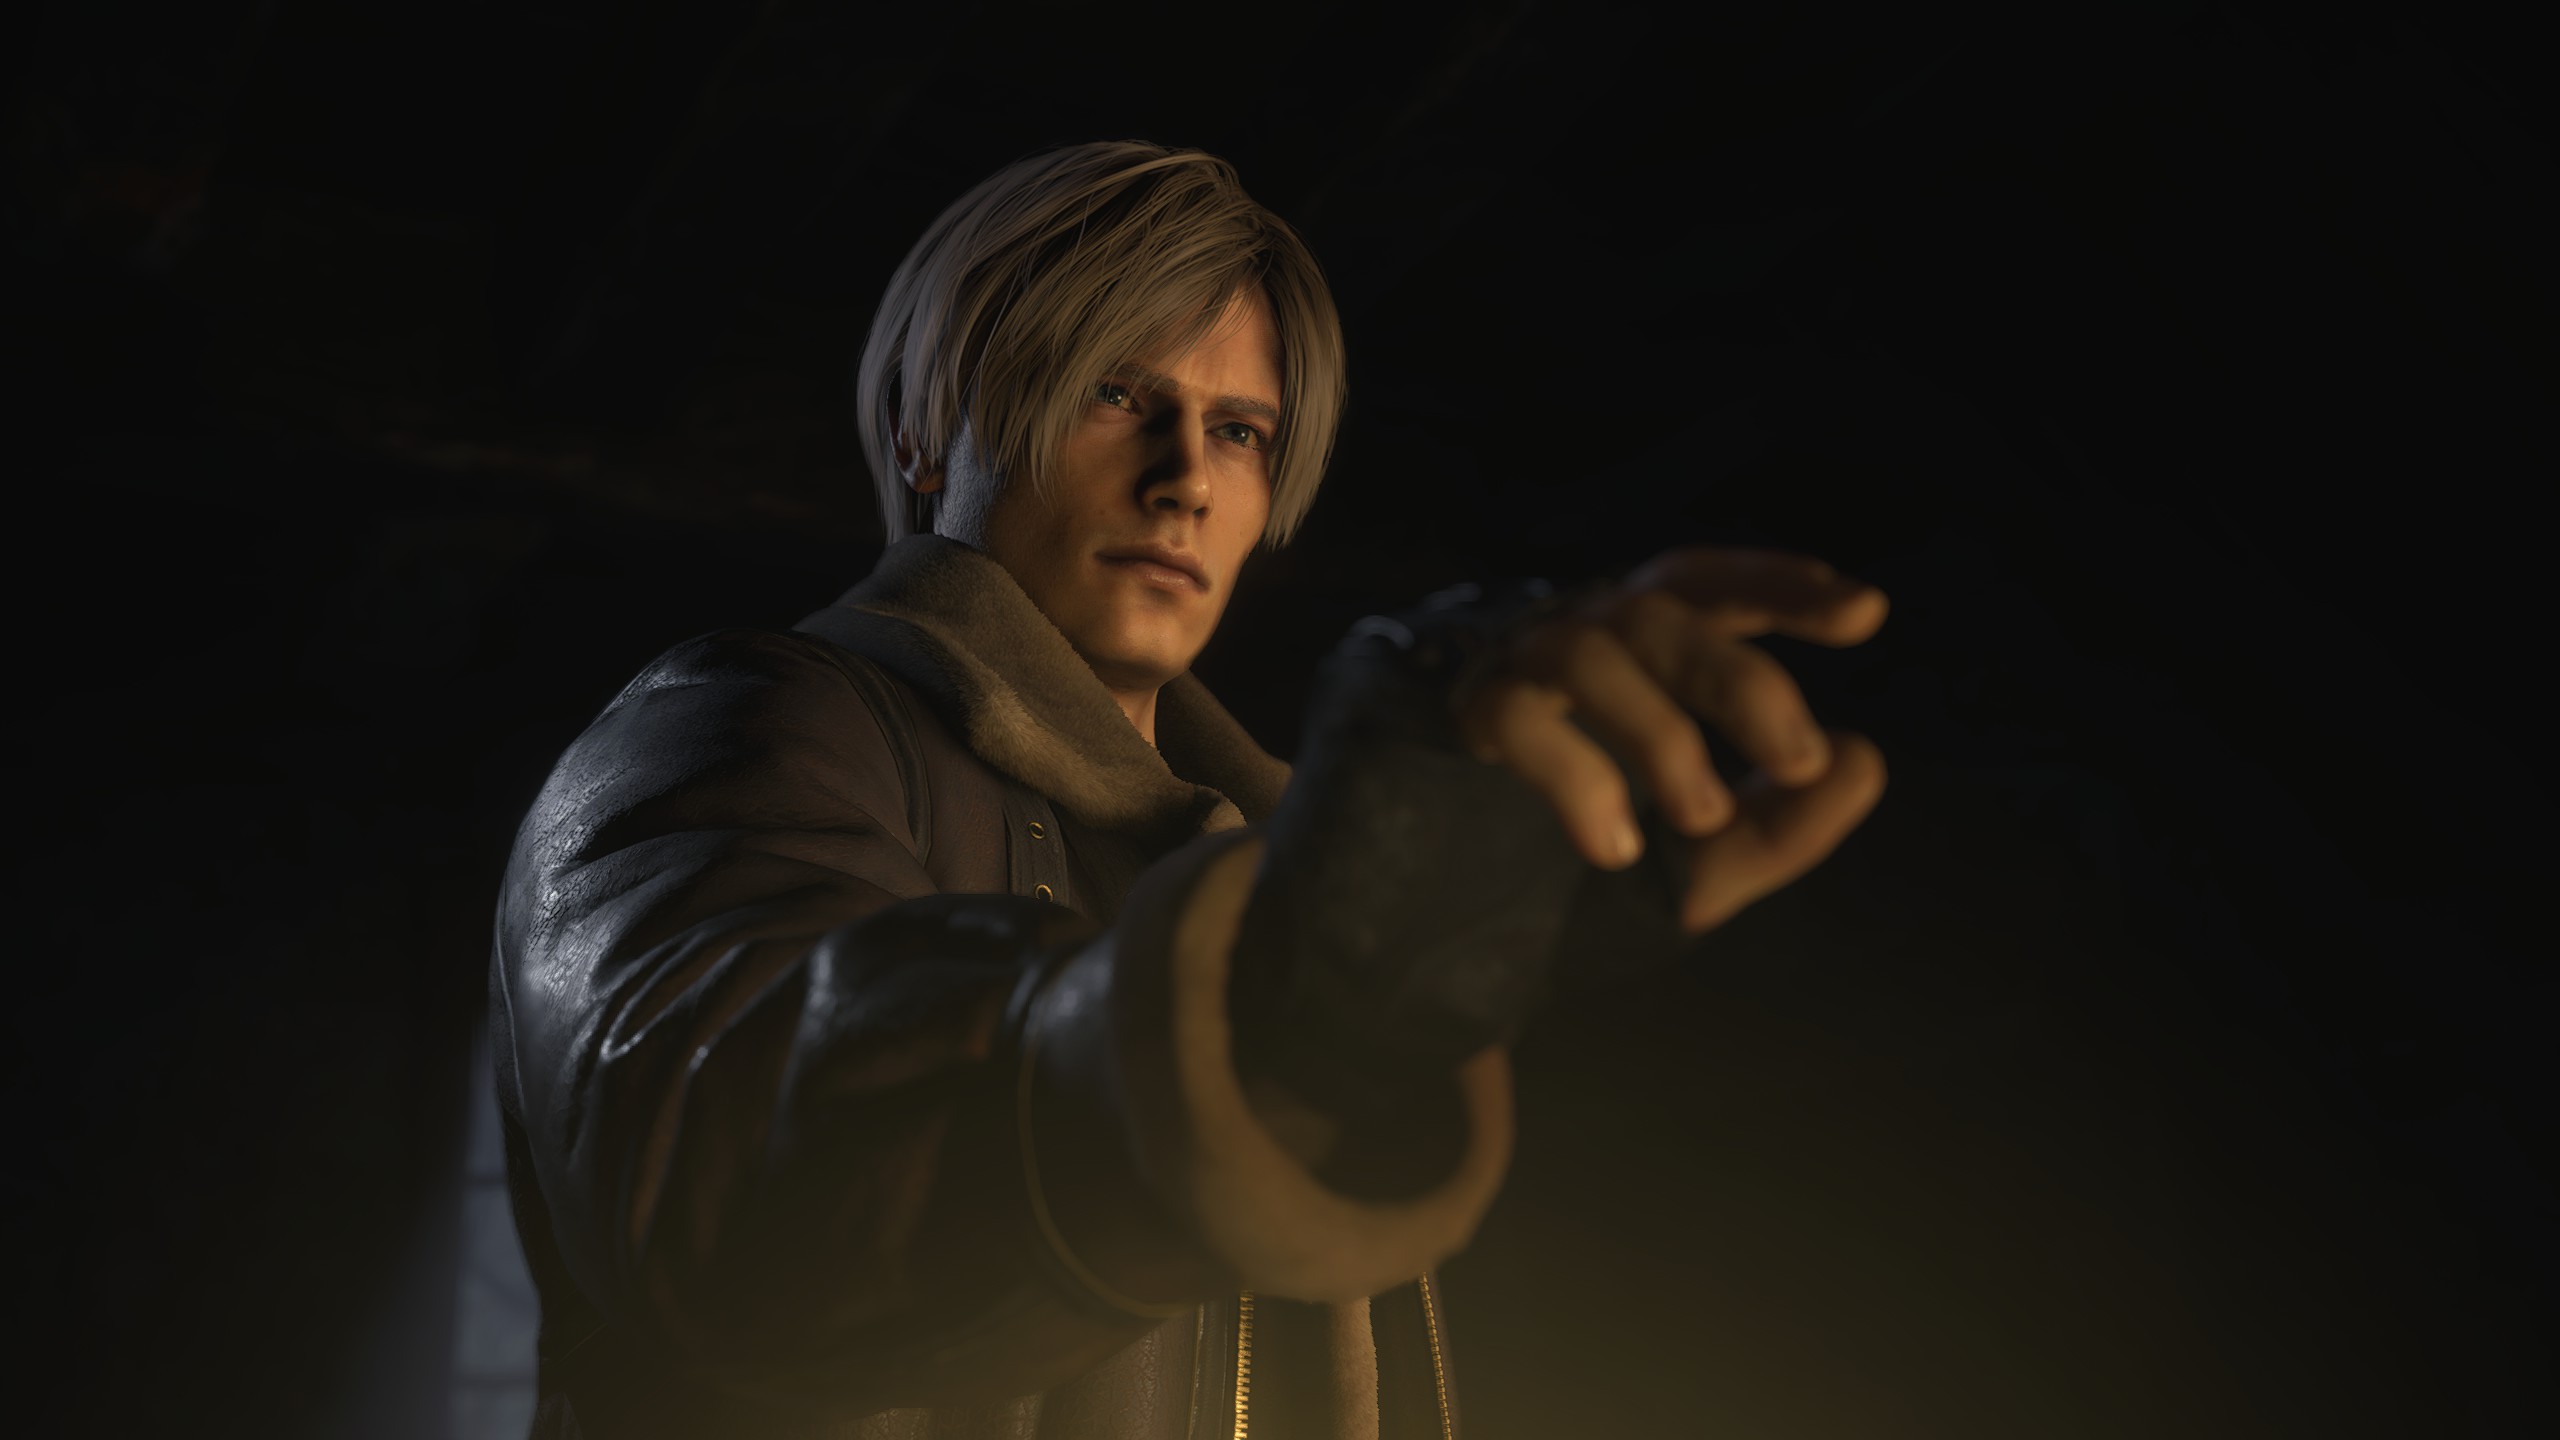 Leon S Kennedy Resident Evil Resident Evil 4 Remake Resident Evil 4 Video Games Video Game Character 2560x1440